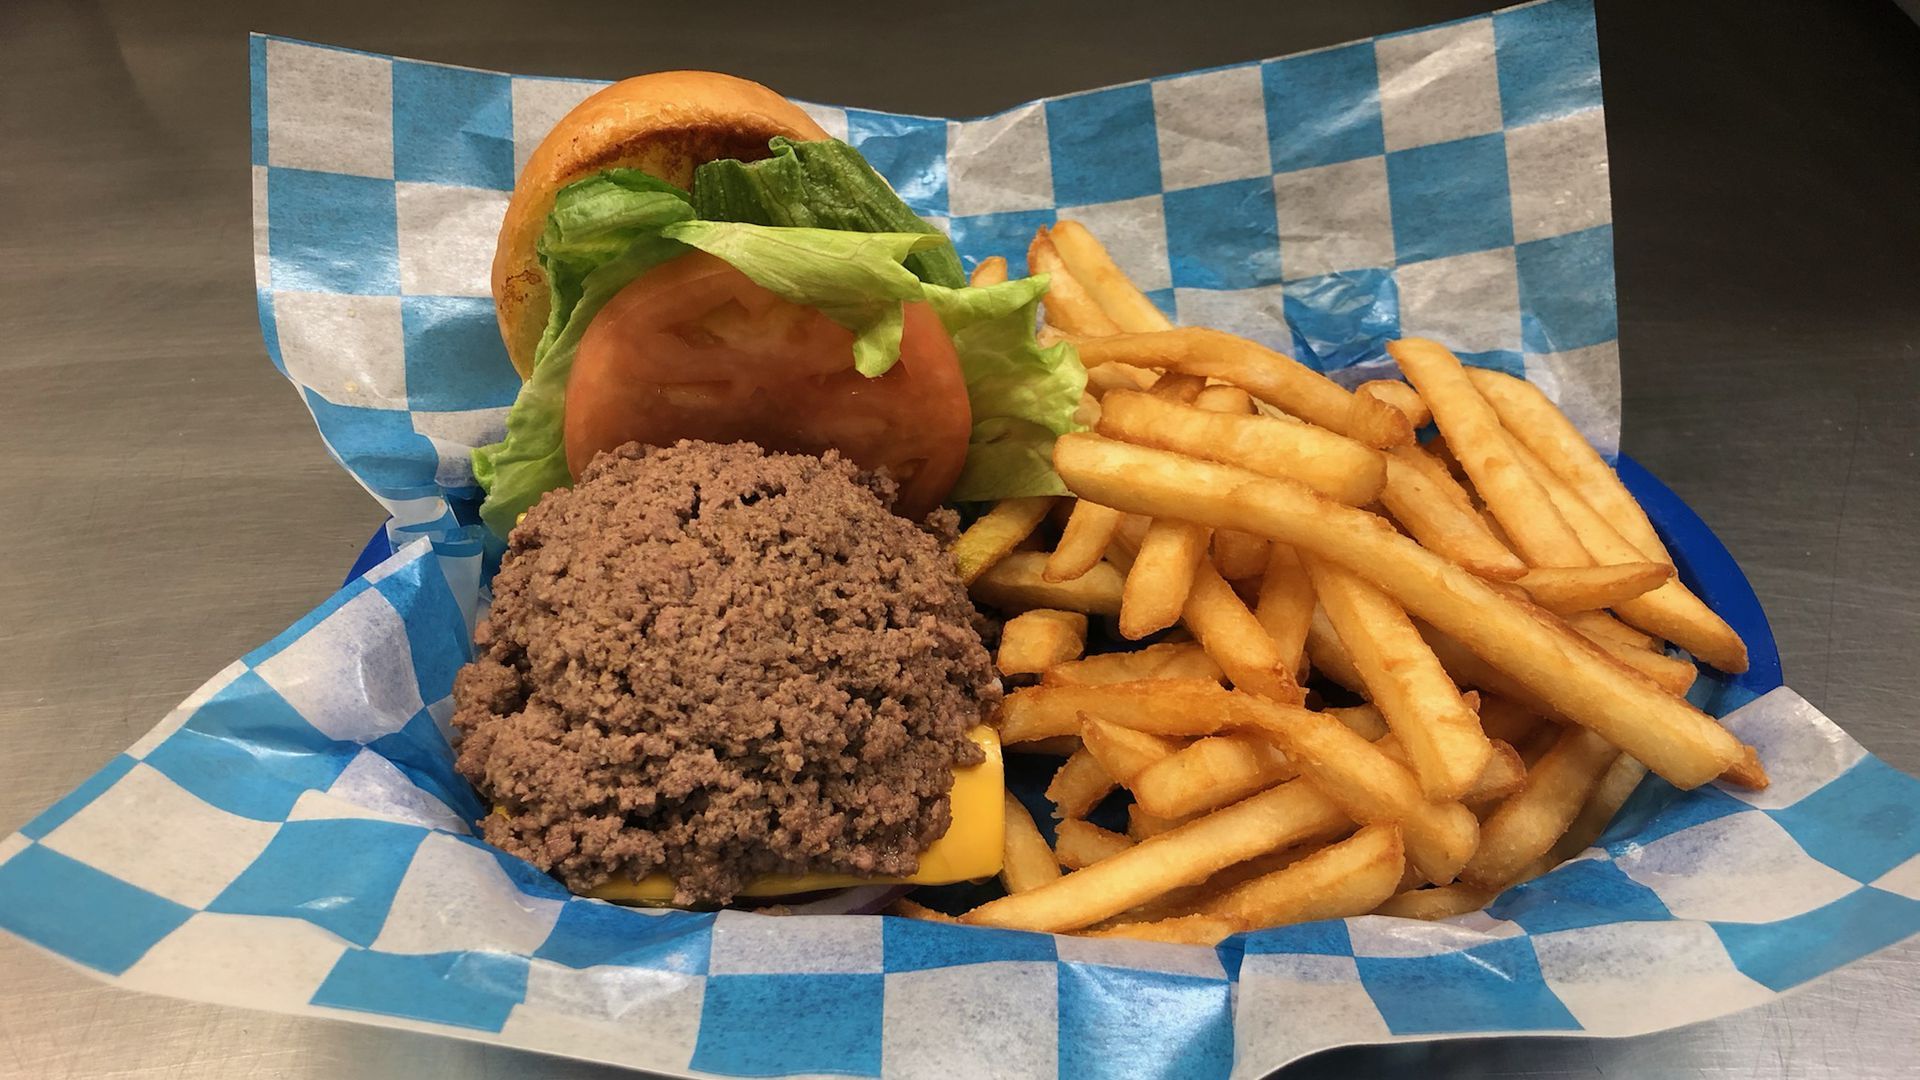 A hamburger and fries